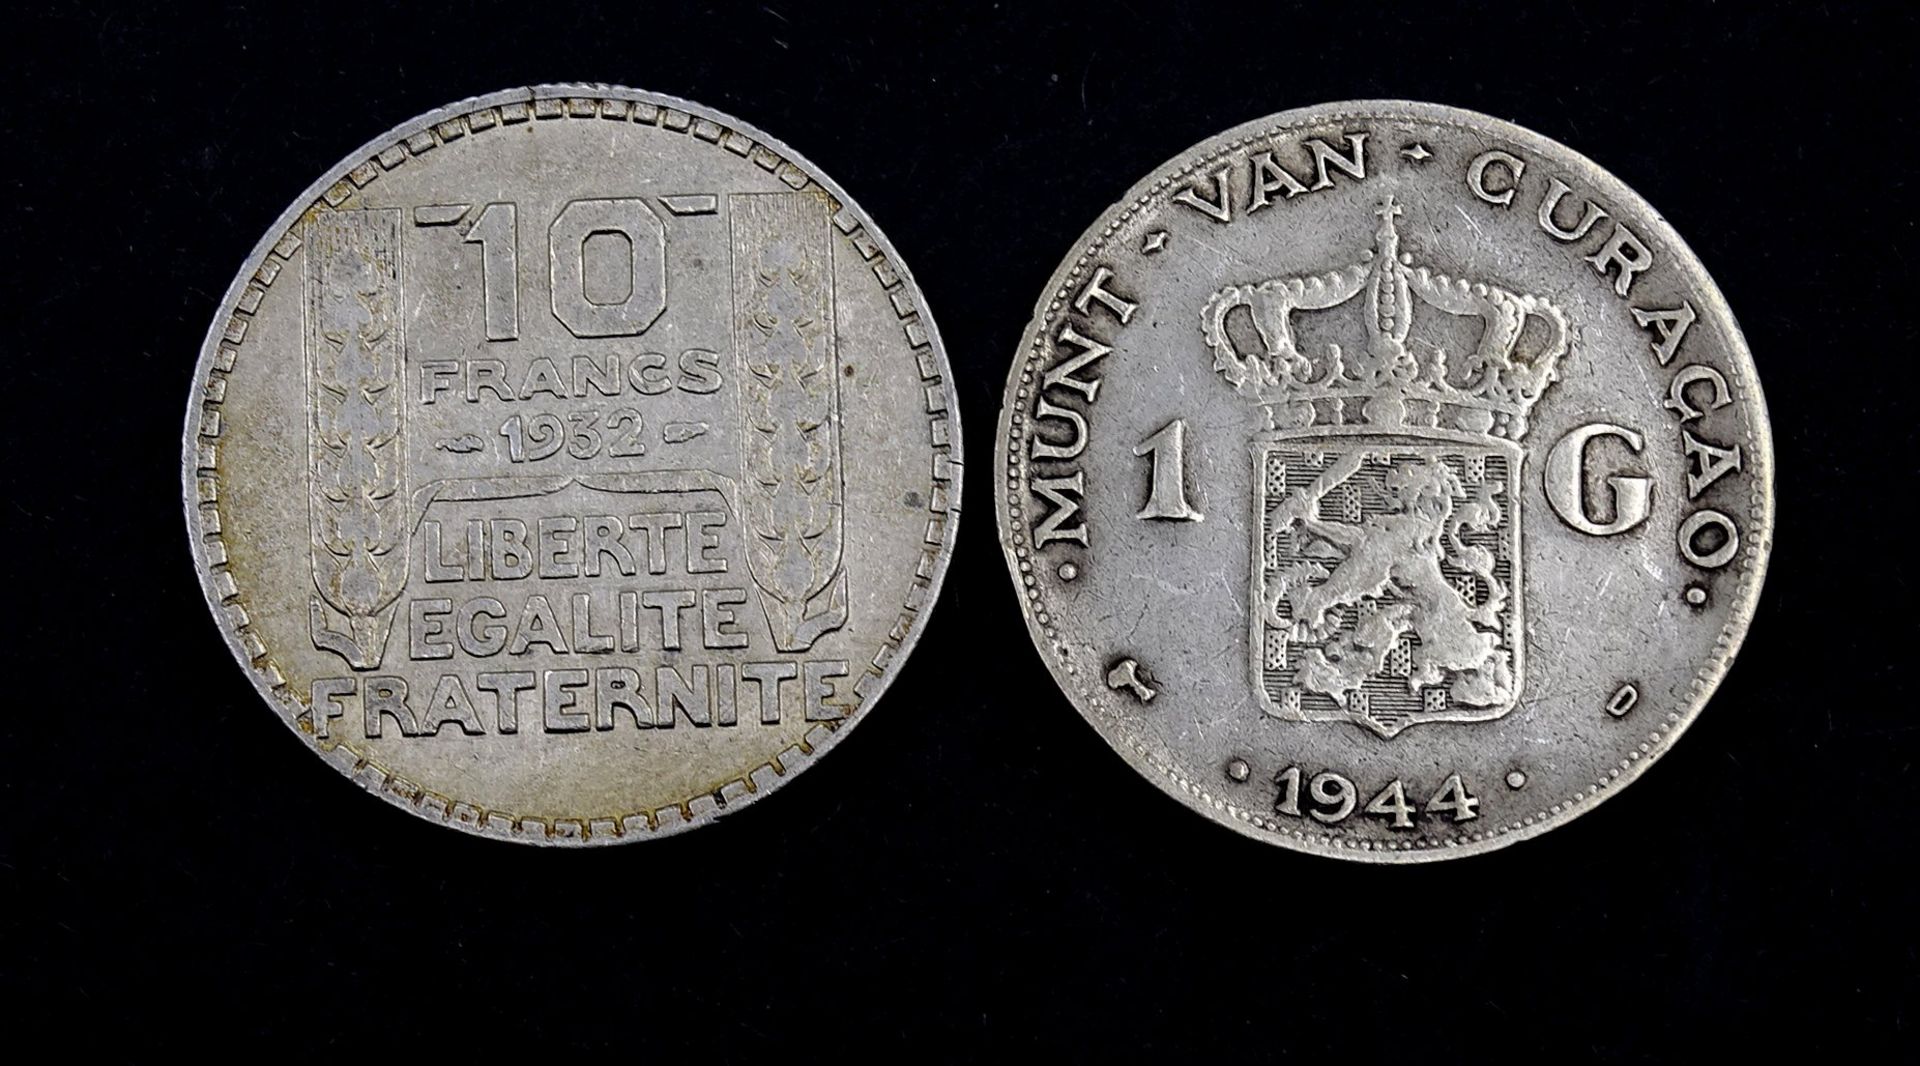 Zwei Silber Münzen, 10 Francs 1932 / 1 Gulden Curacao 1944 , zus. 19,7g.